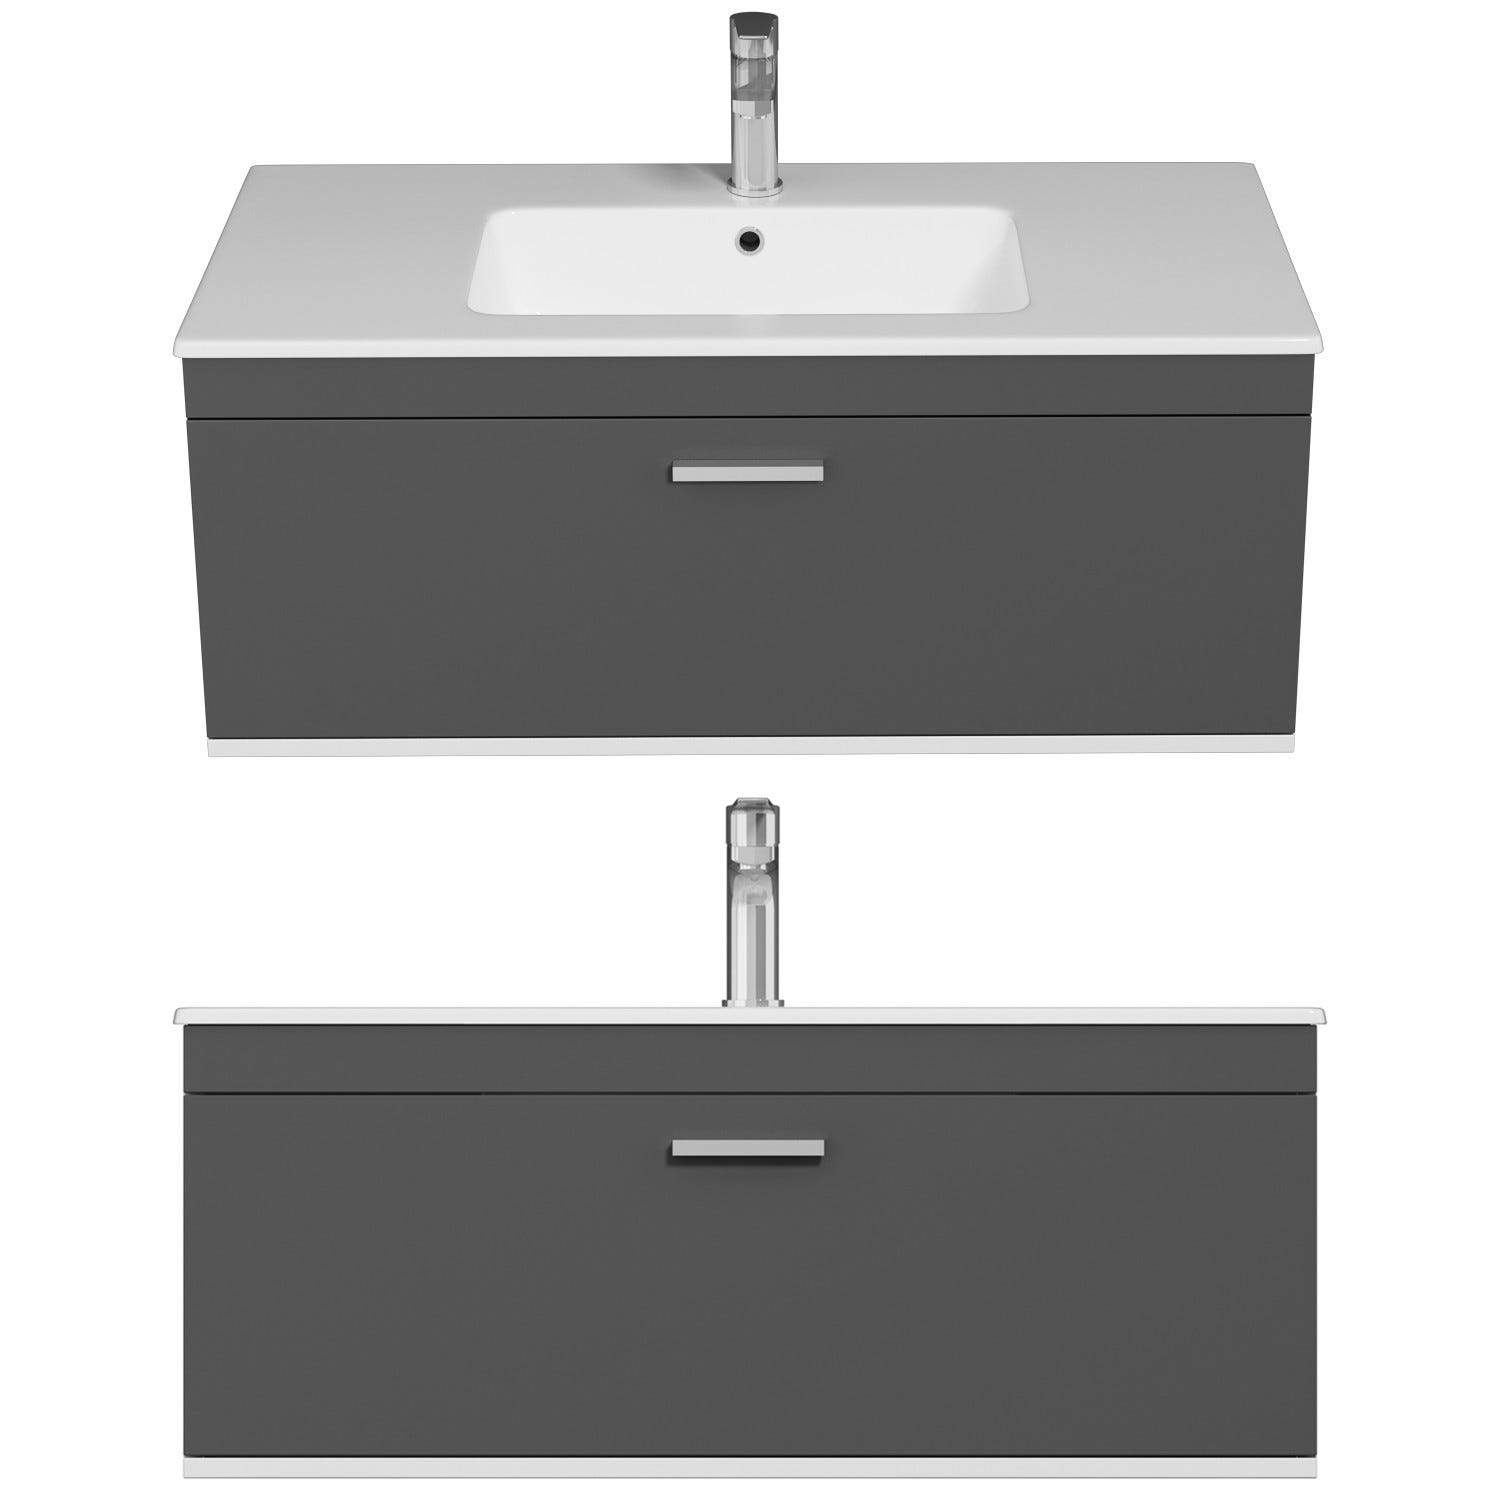 RUBITE Meuble salle de bain simple vasque 1 tiroir gris anthracite largeur 100 cm 3